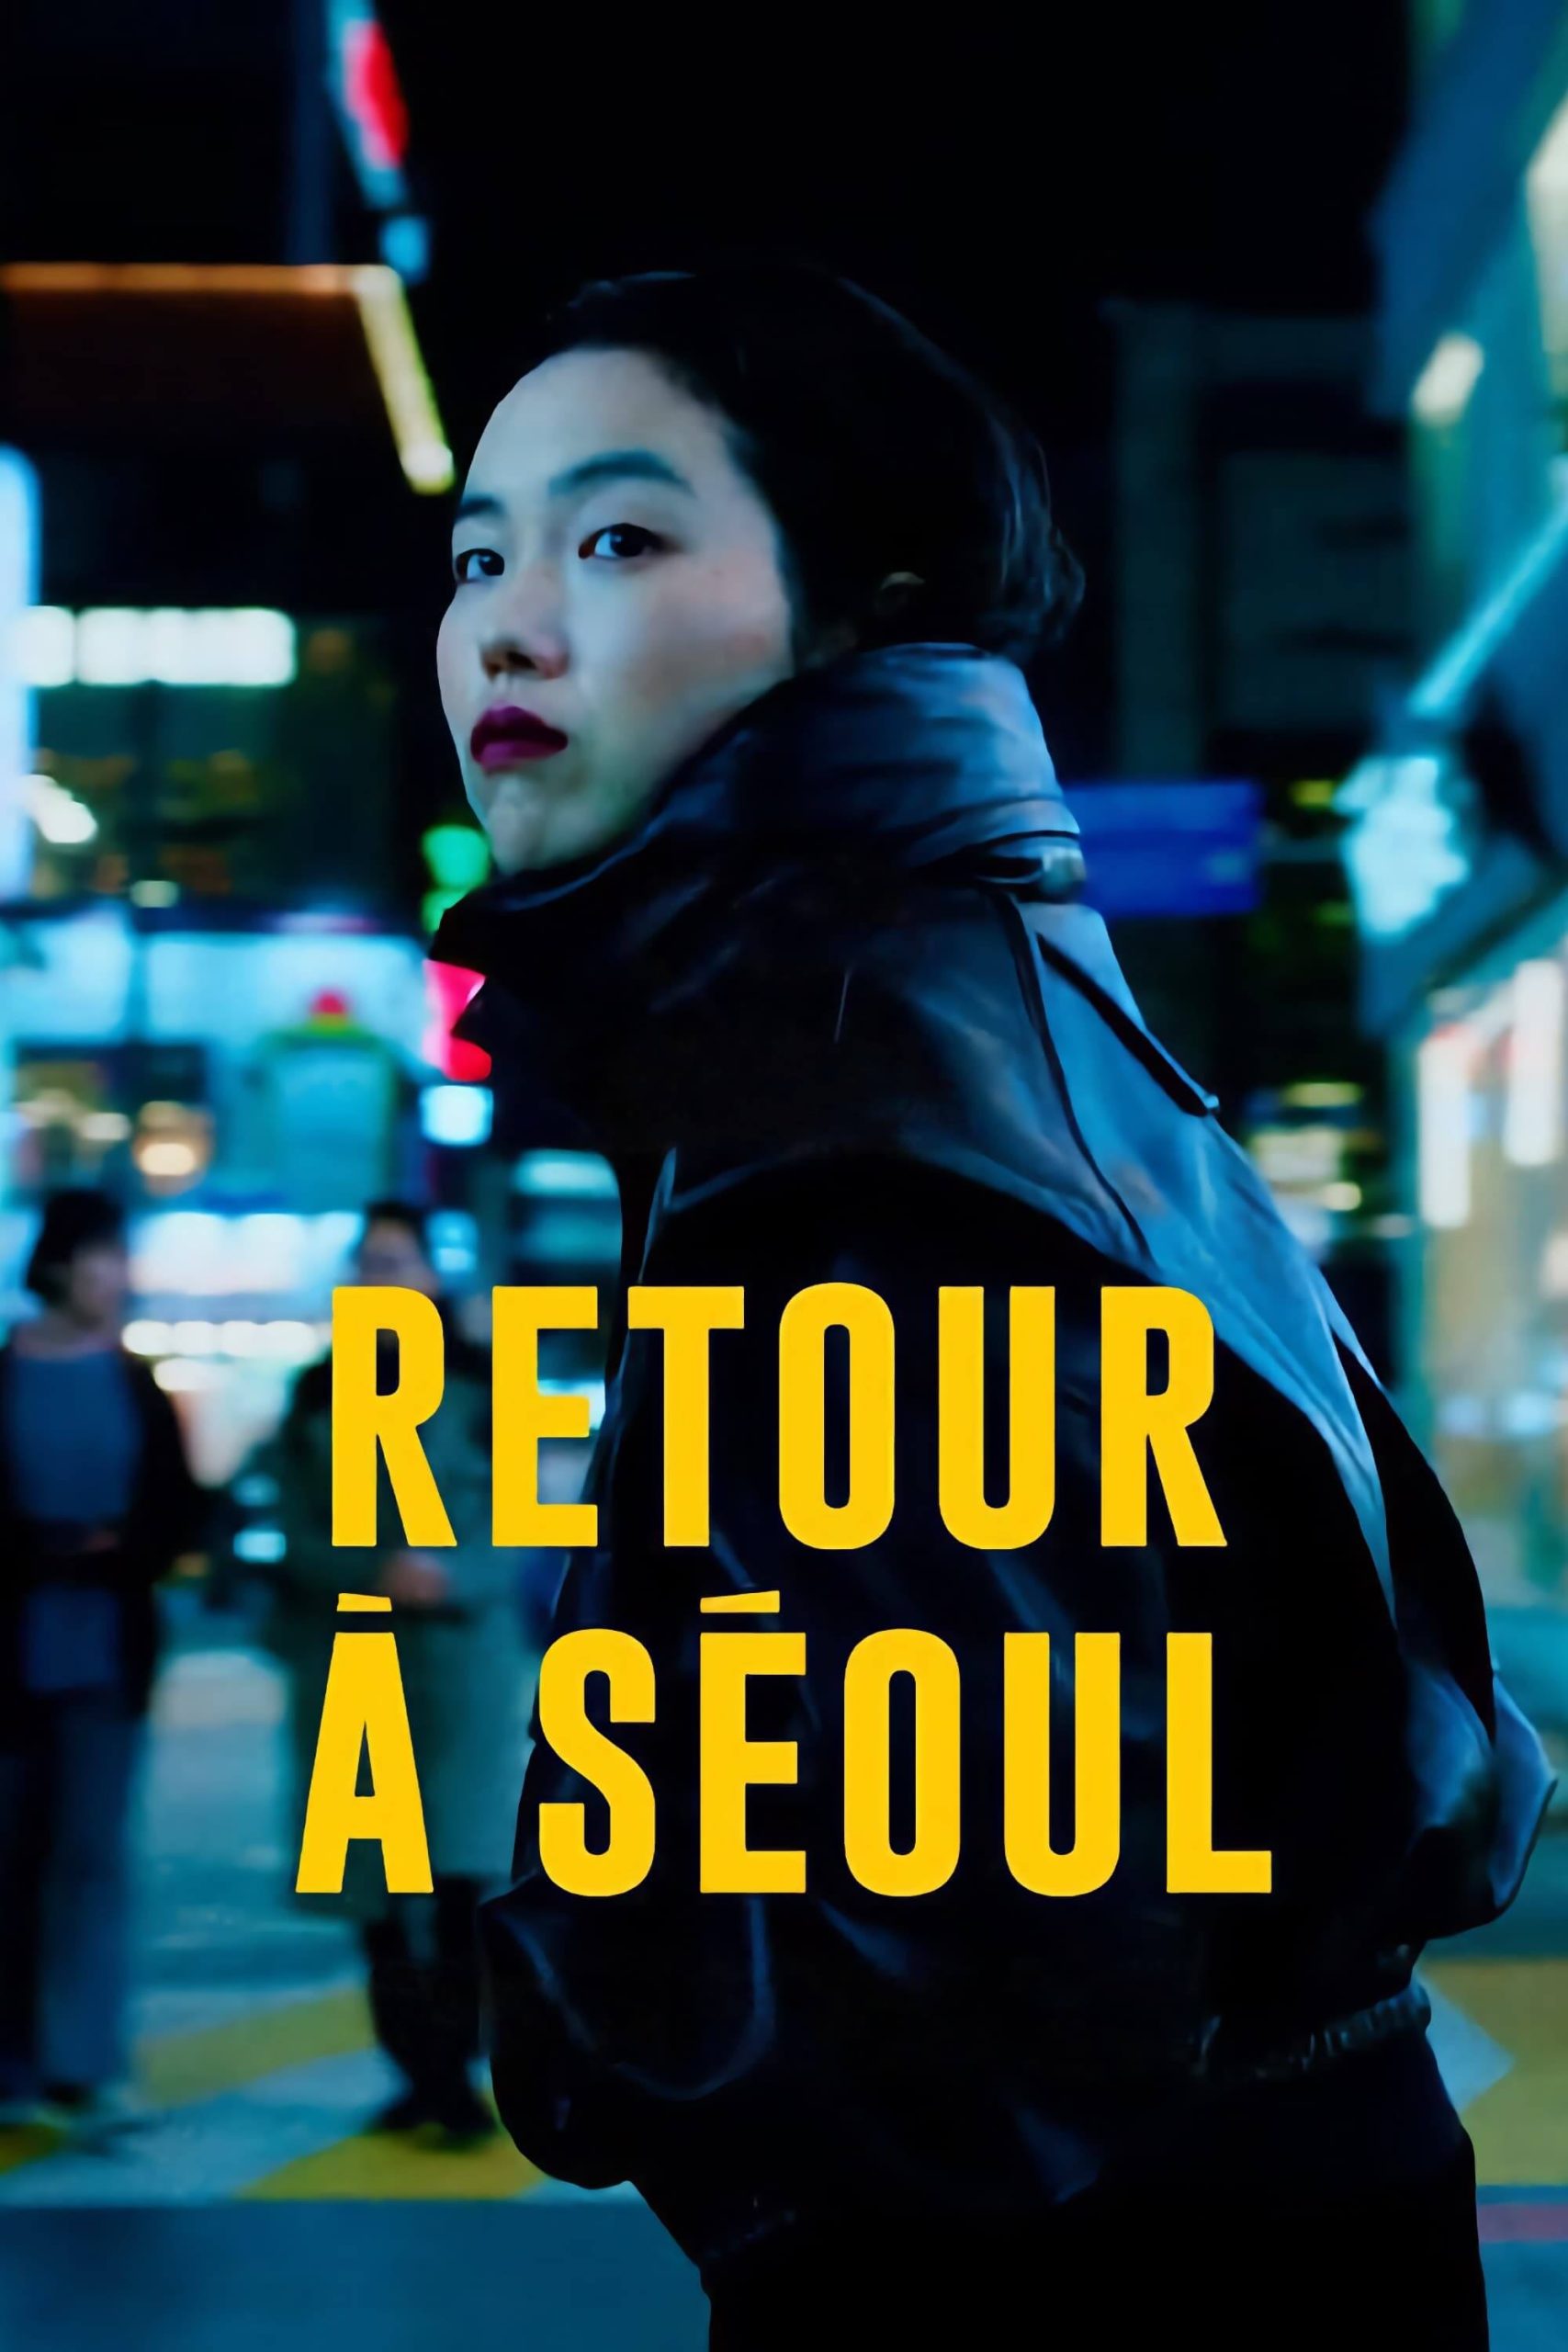 بازگشت به سئول (Return to Seoul)